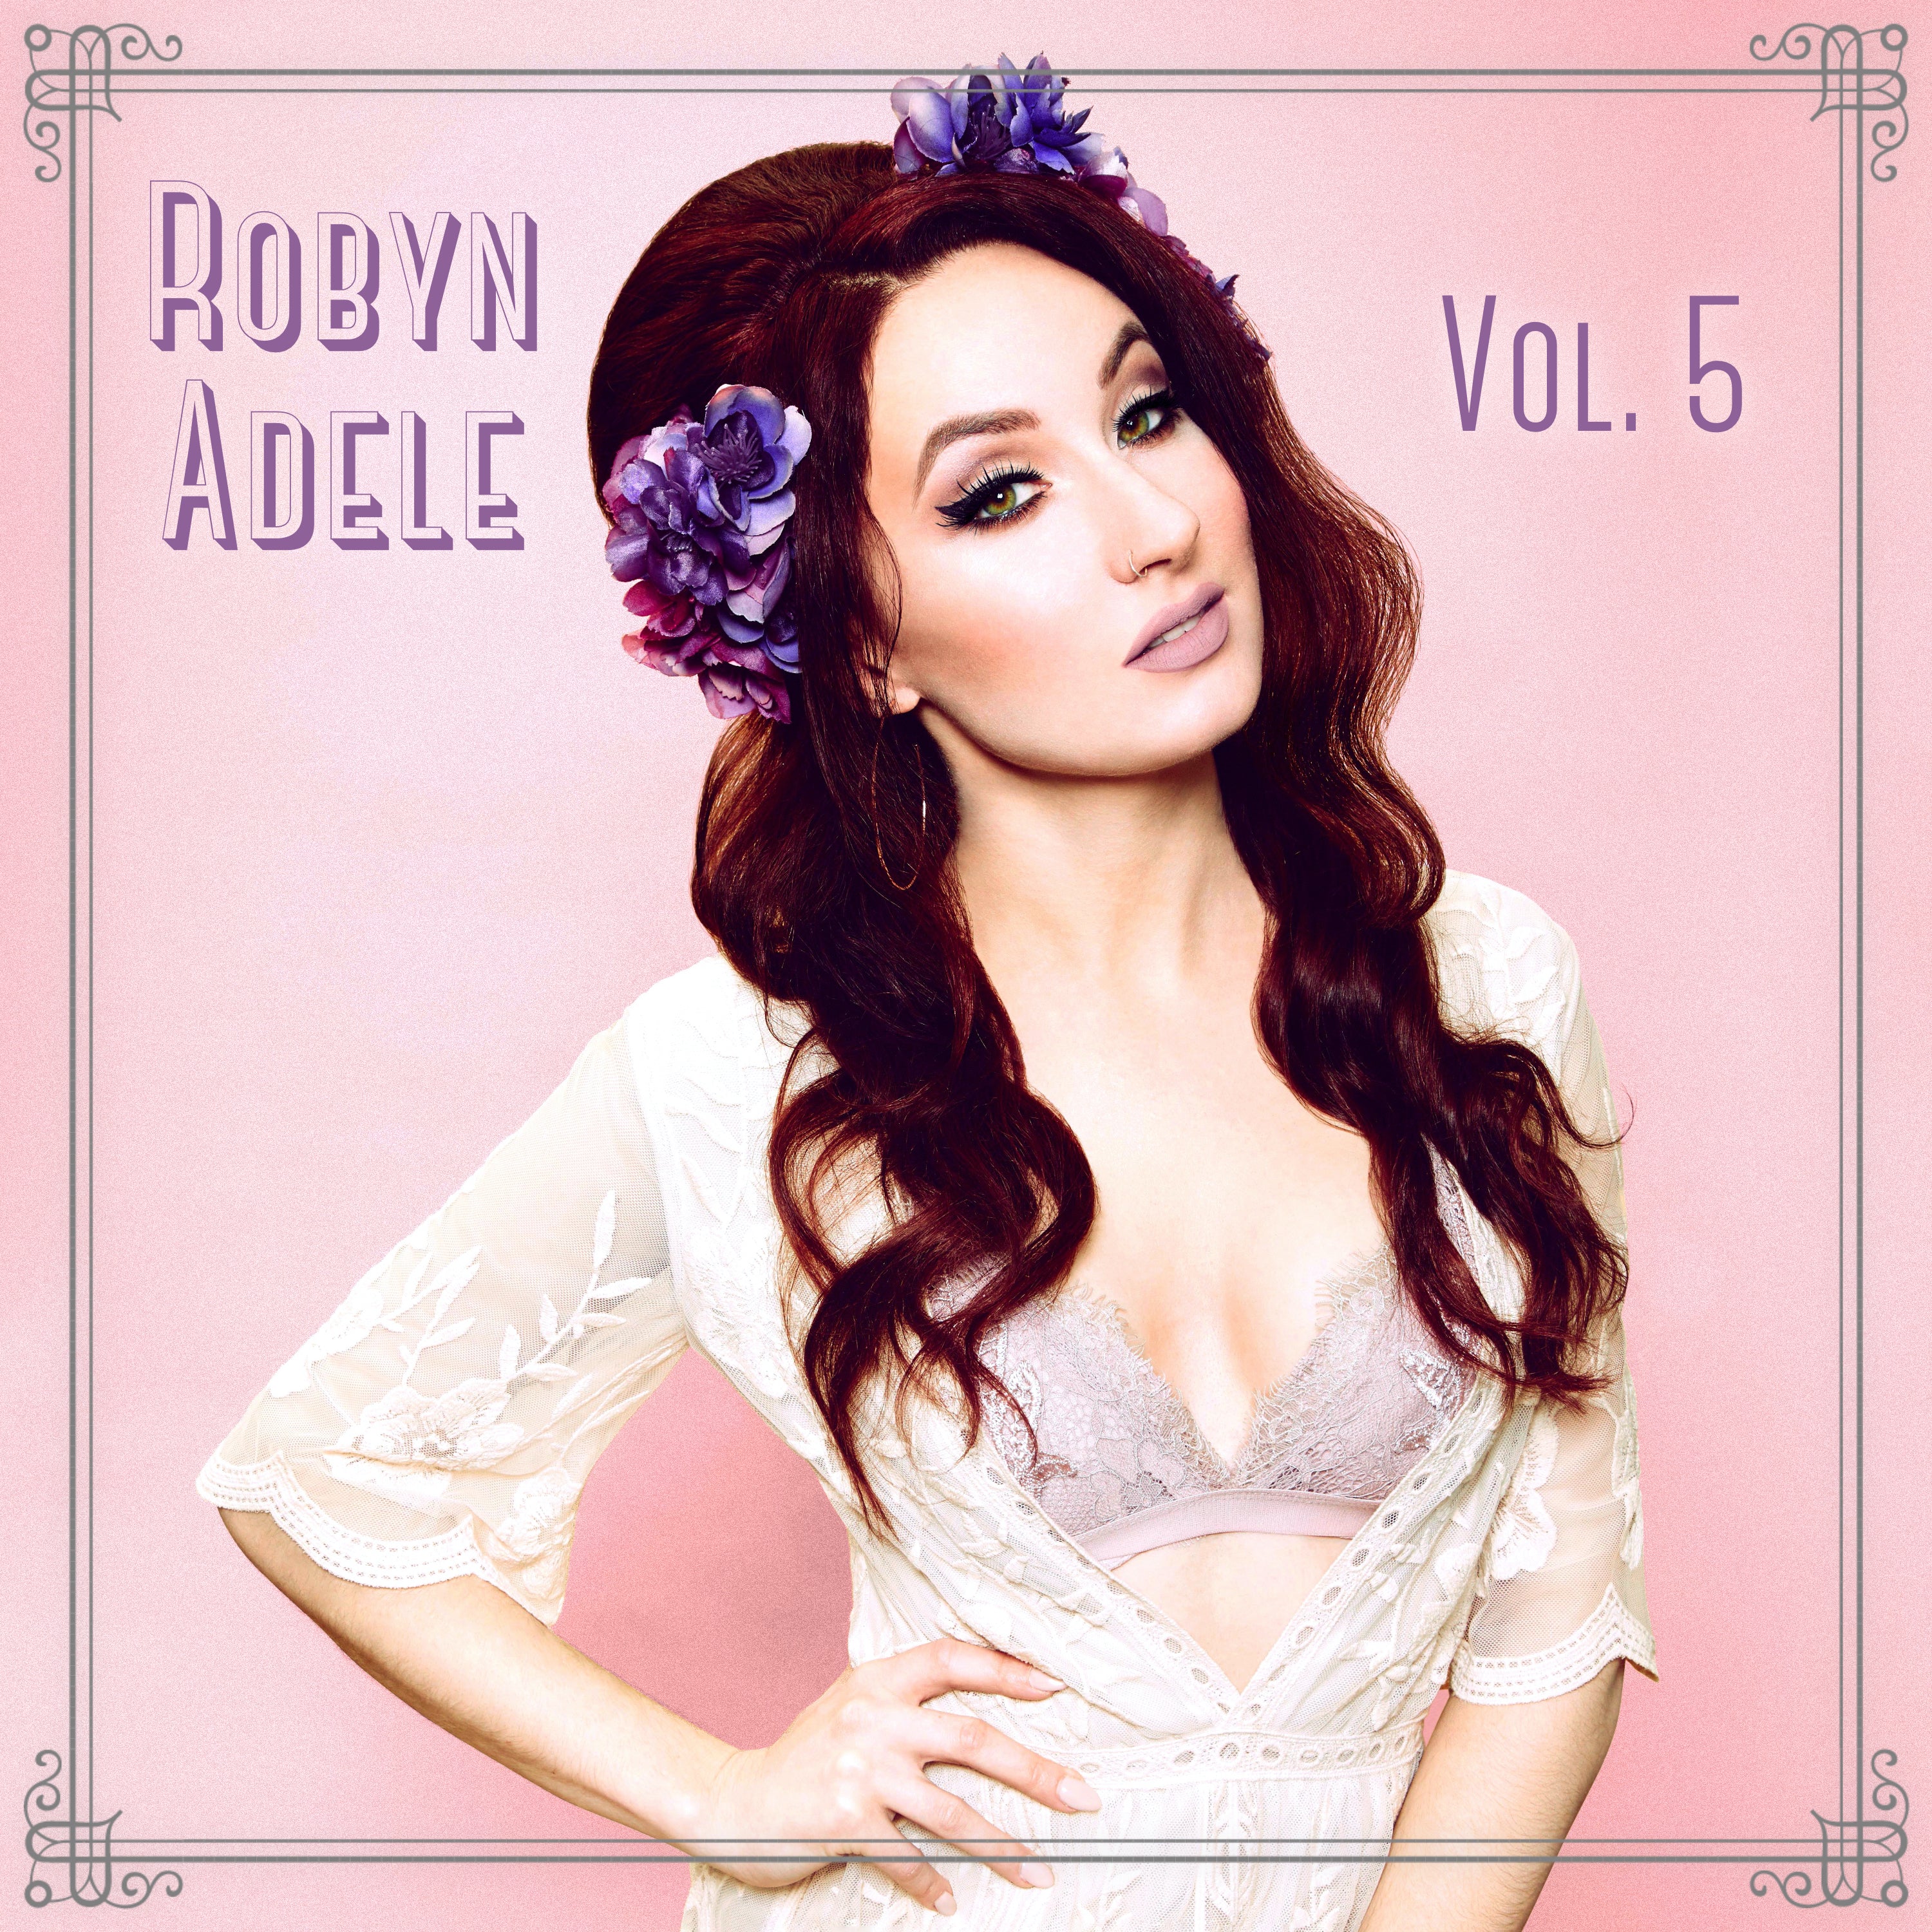 Robyn Adele Vol. 5 - CD